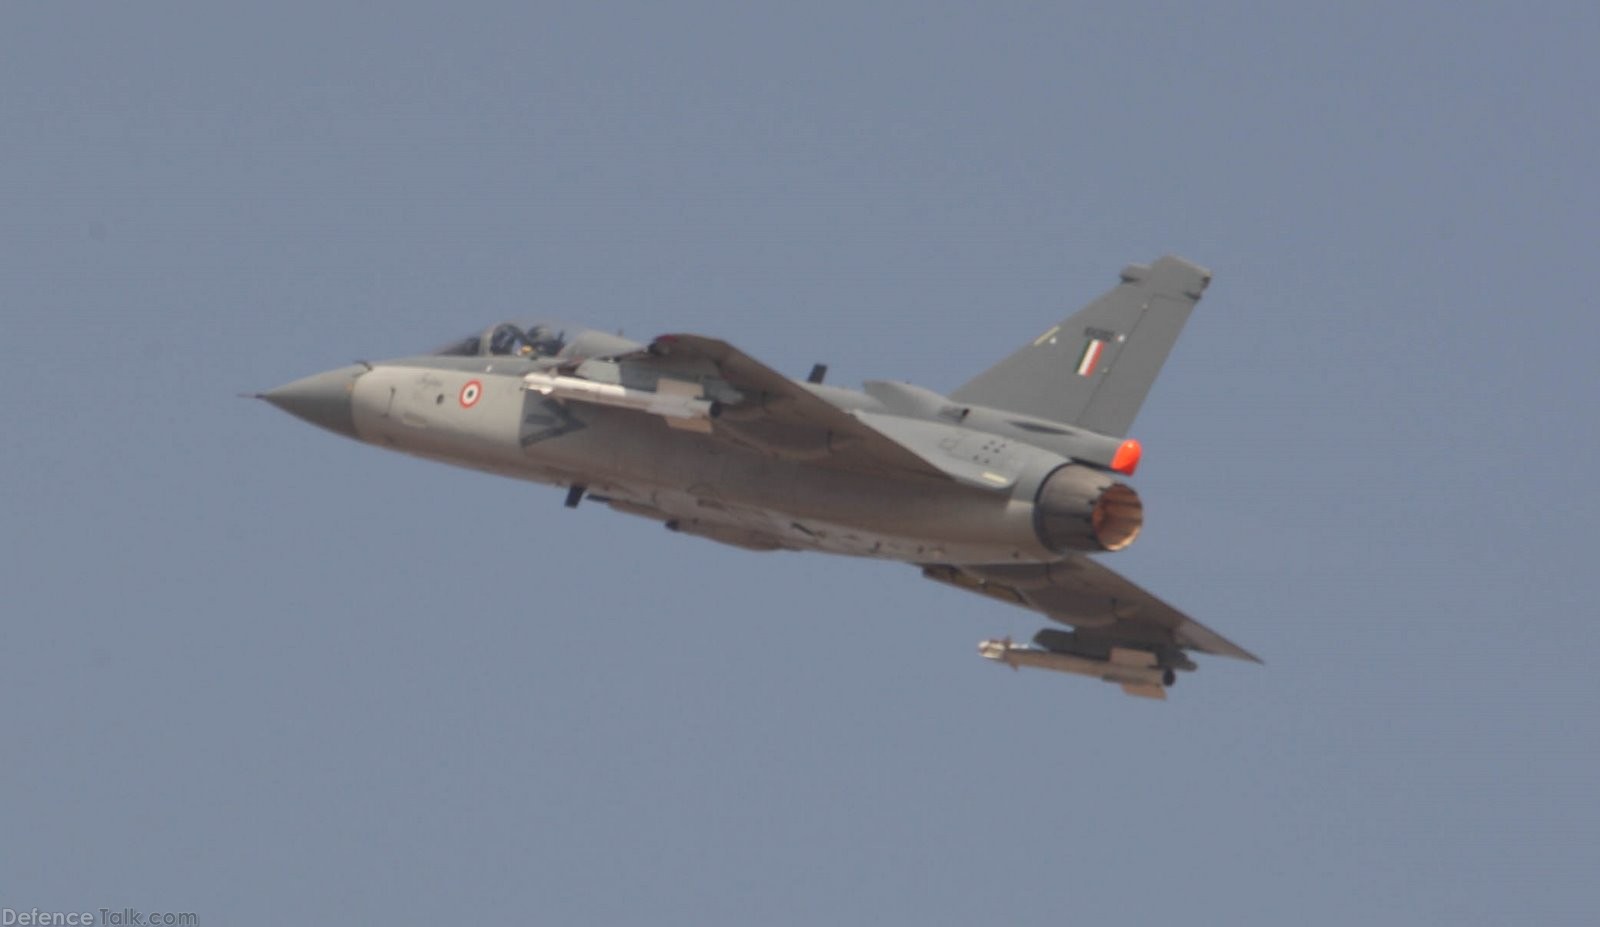 Combat Fighter Plane - Aero India 2009 Air Show